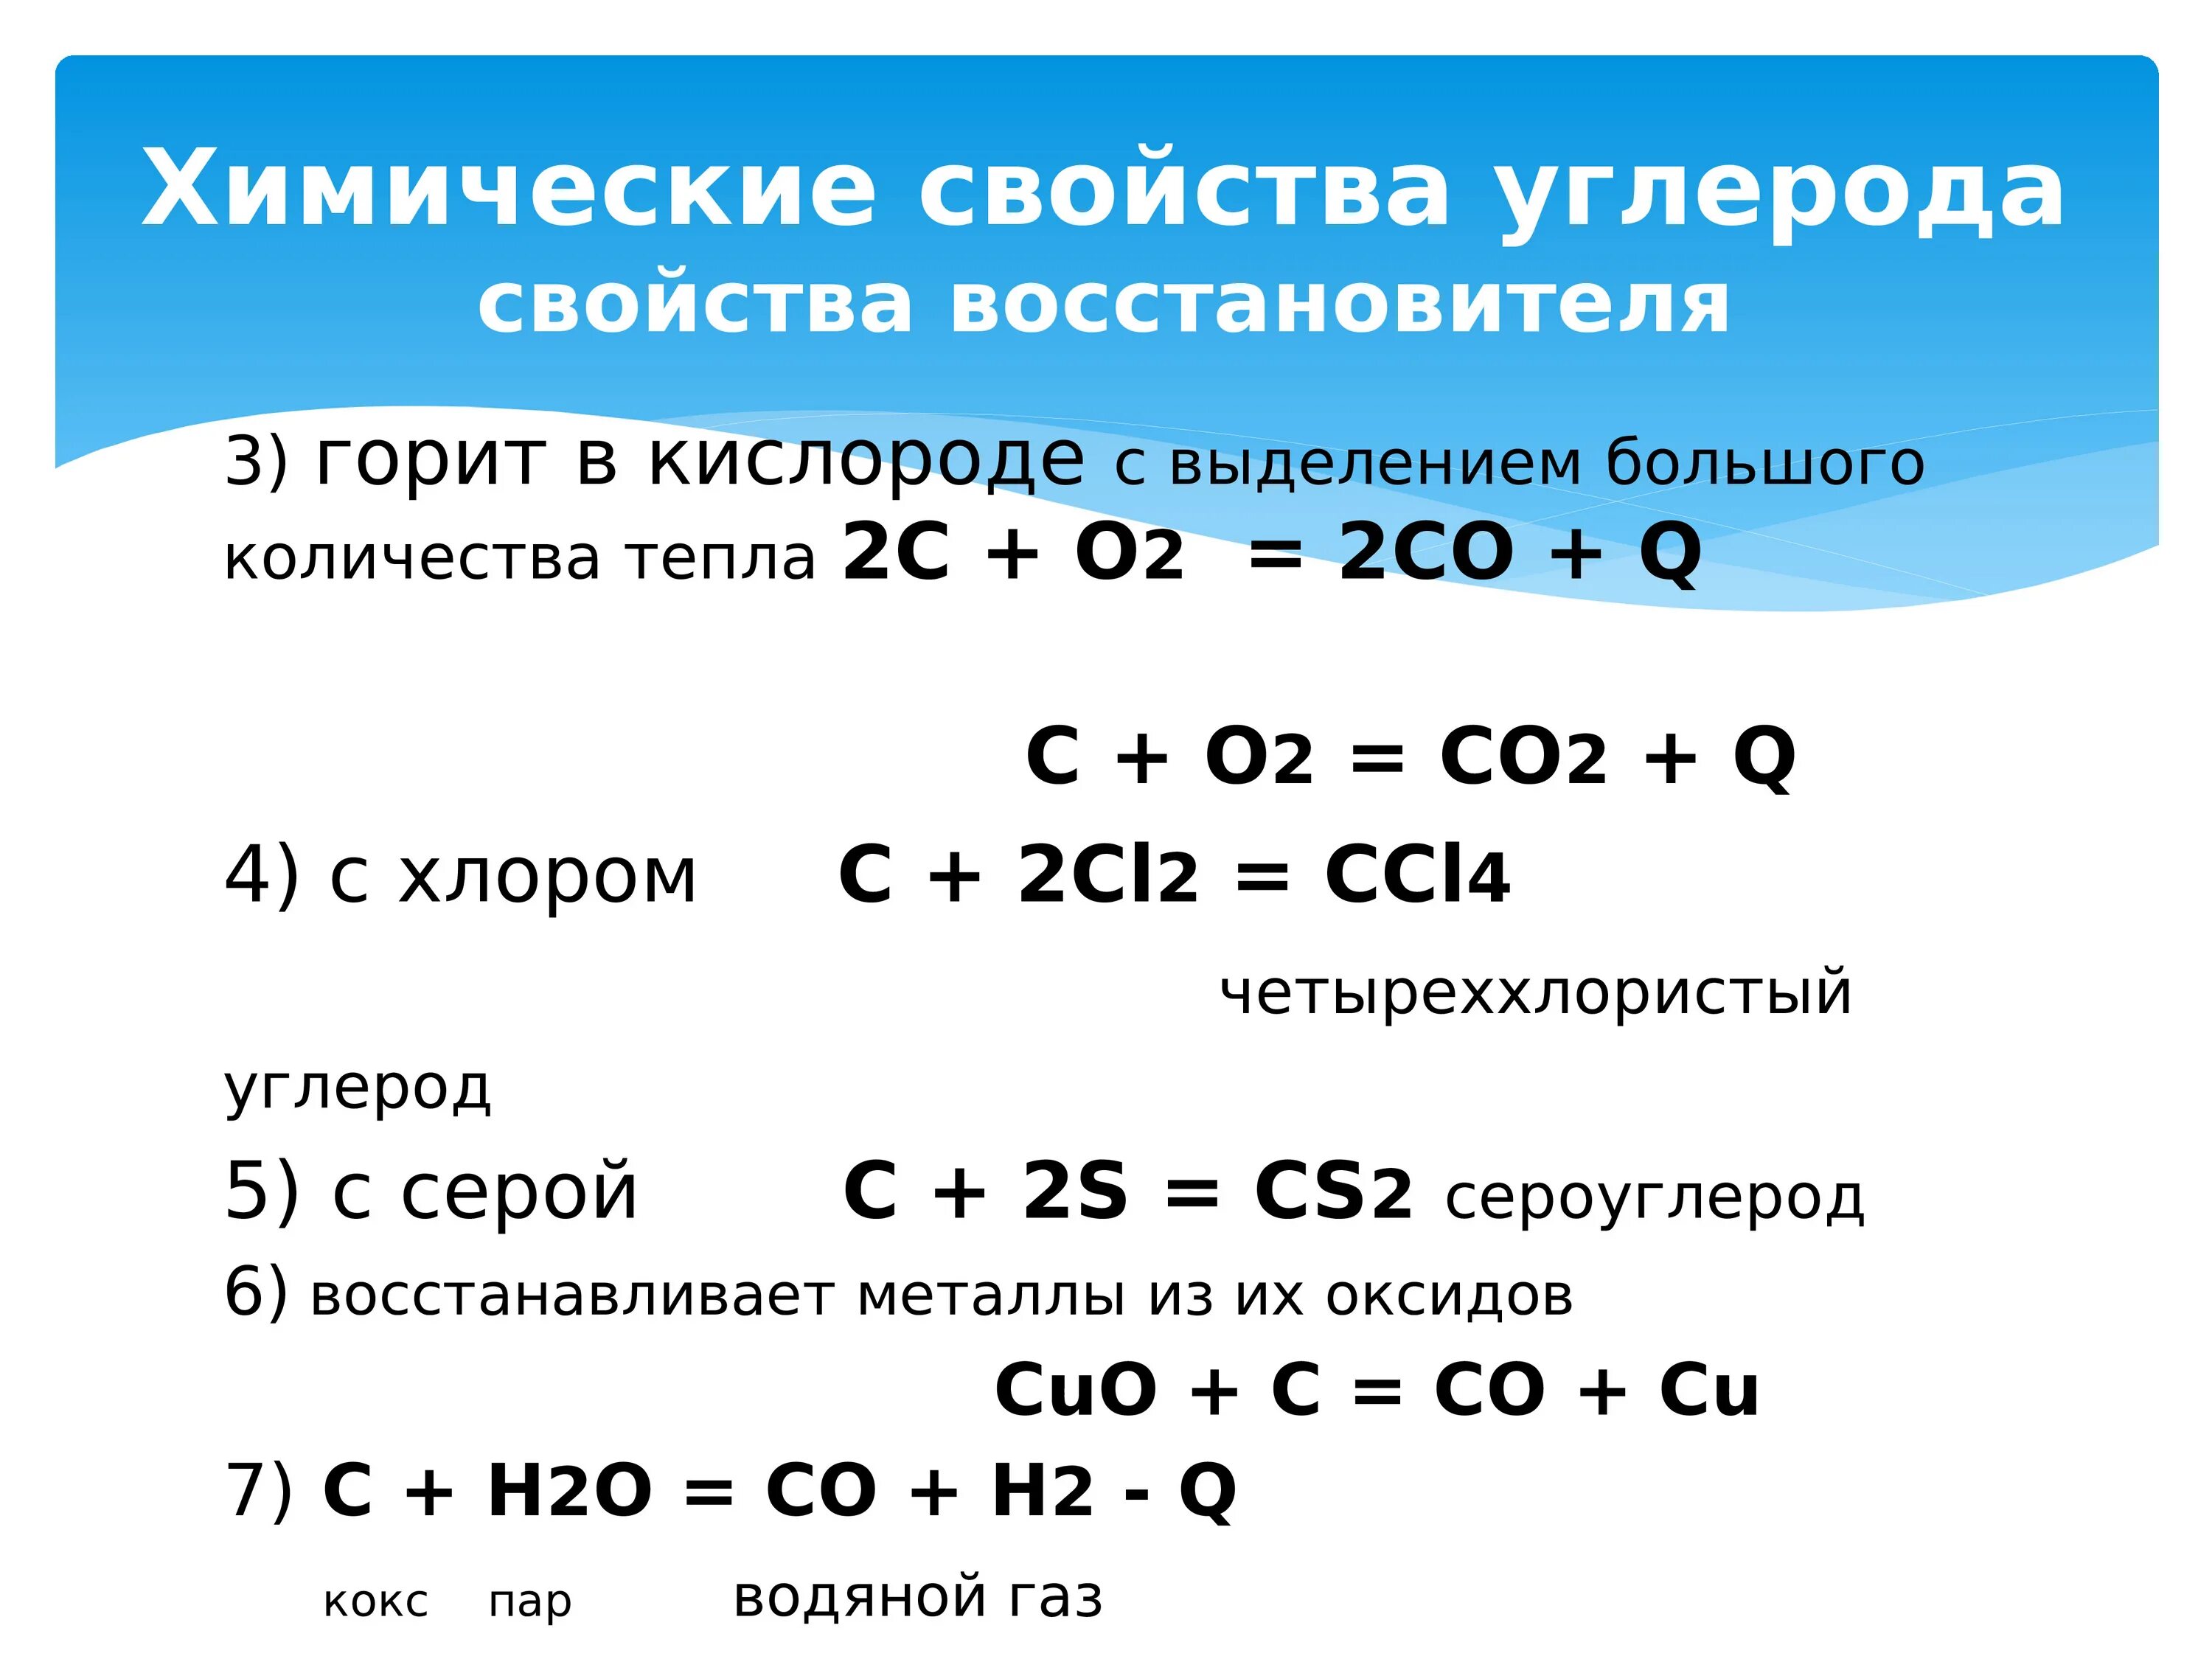 Перечислить соединения углерода. Химические свойства углерода реакции. Химические свойства углерода таблица. Химические свойства углерода уравнения. Углерод соединения углерода.